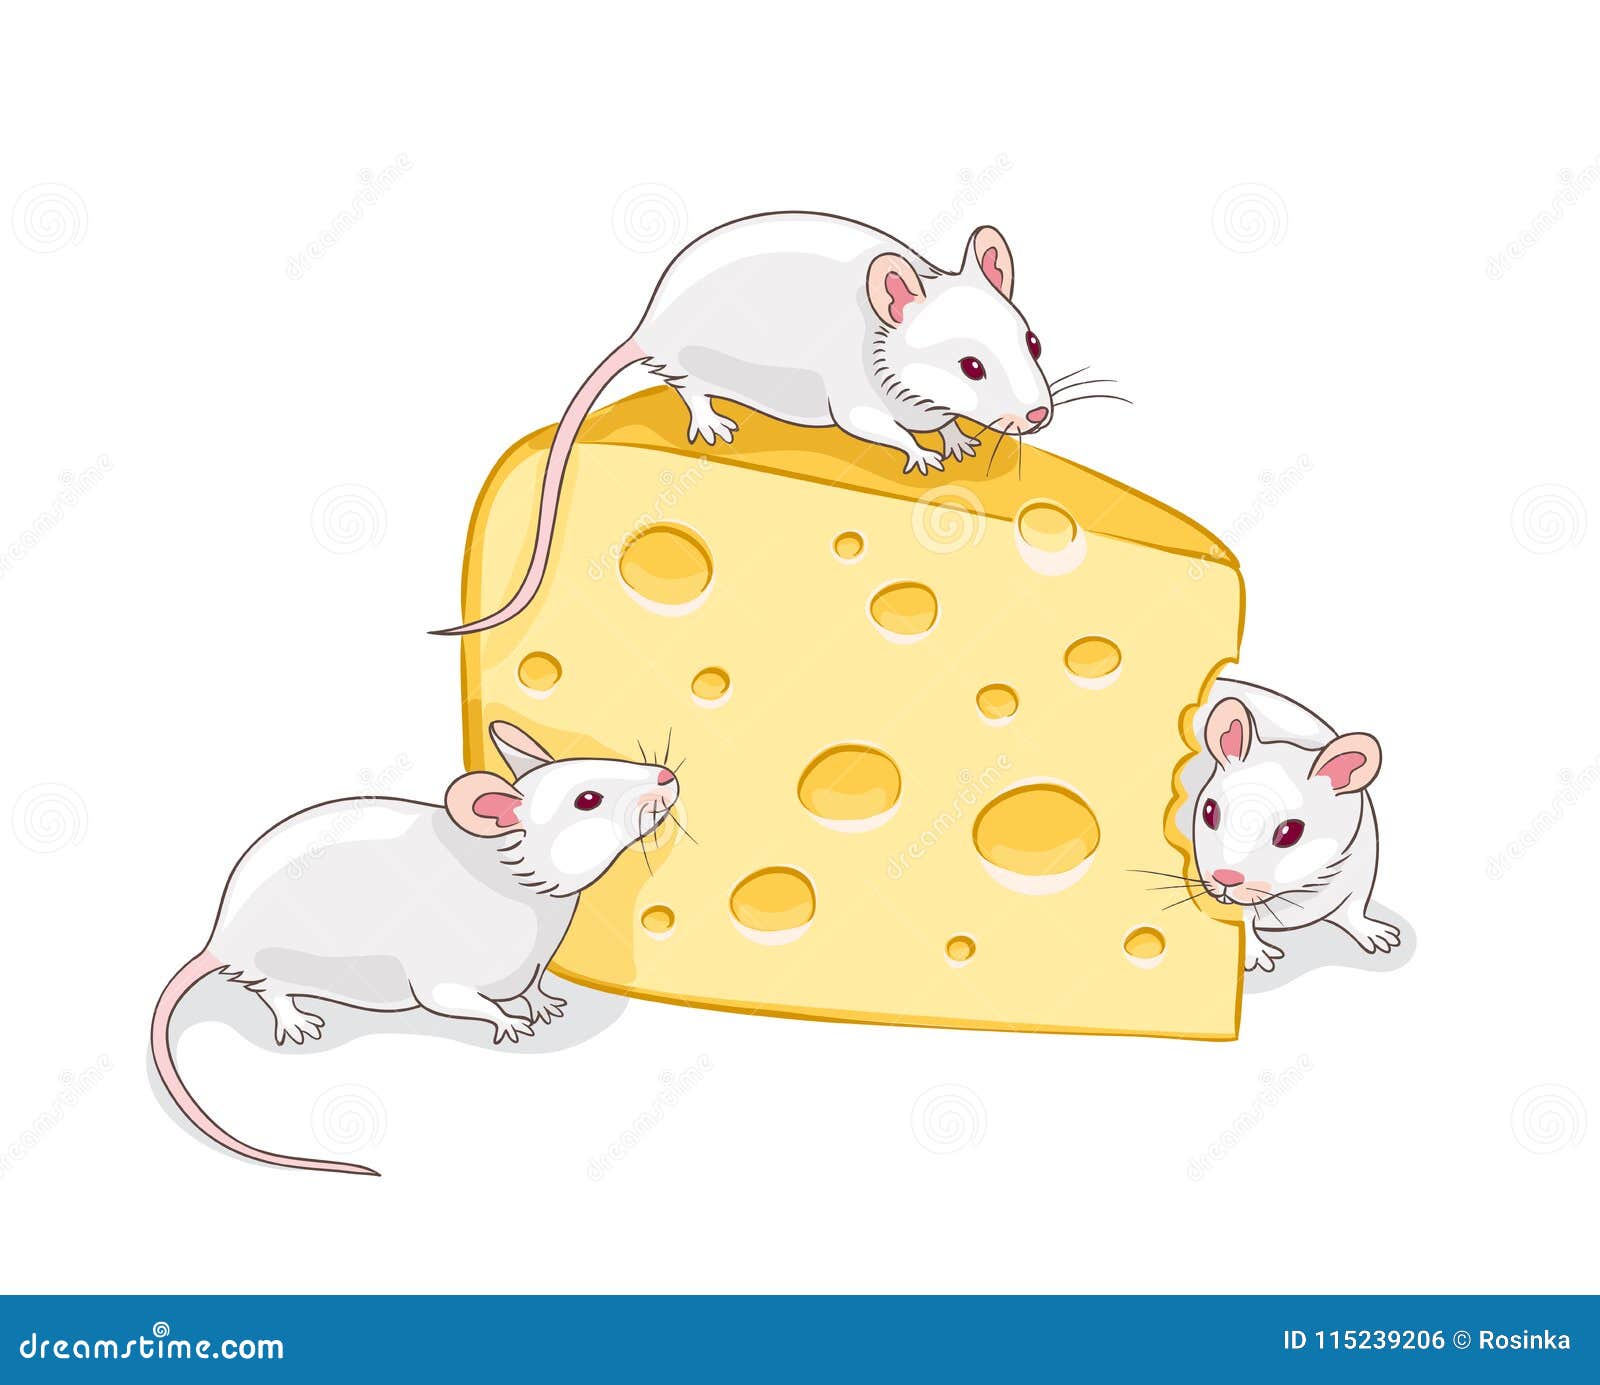 Мышь и сыр на белом фоне